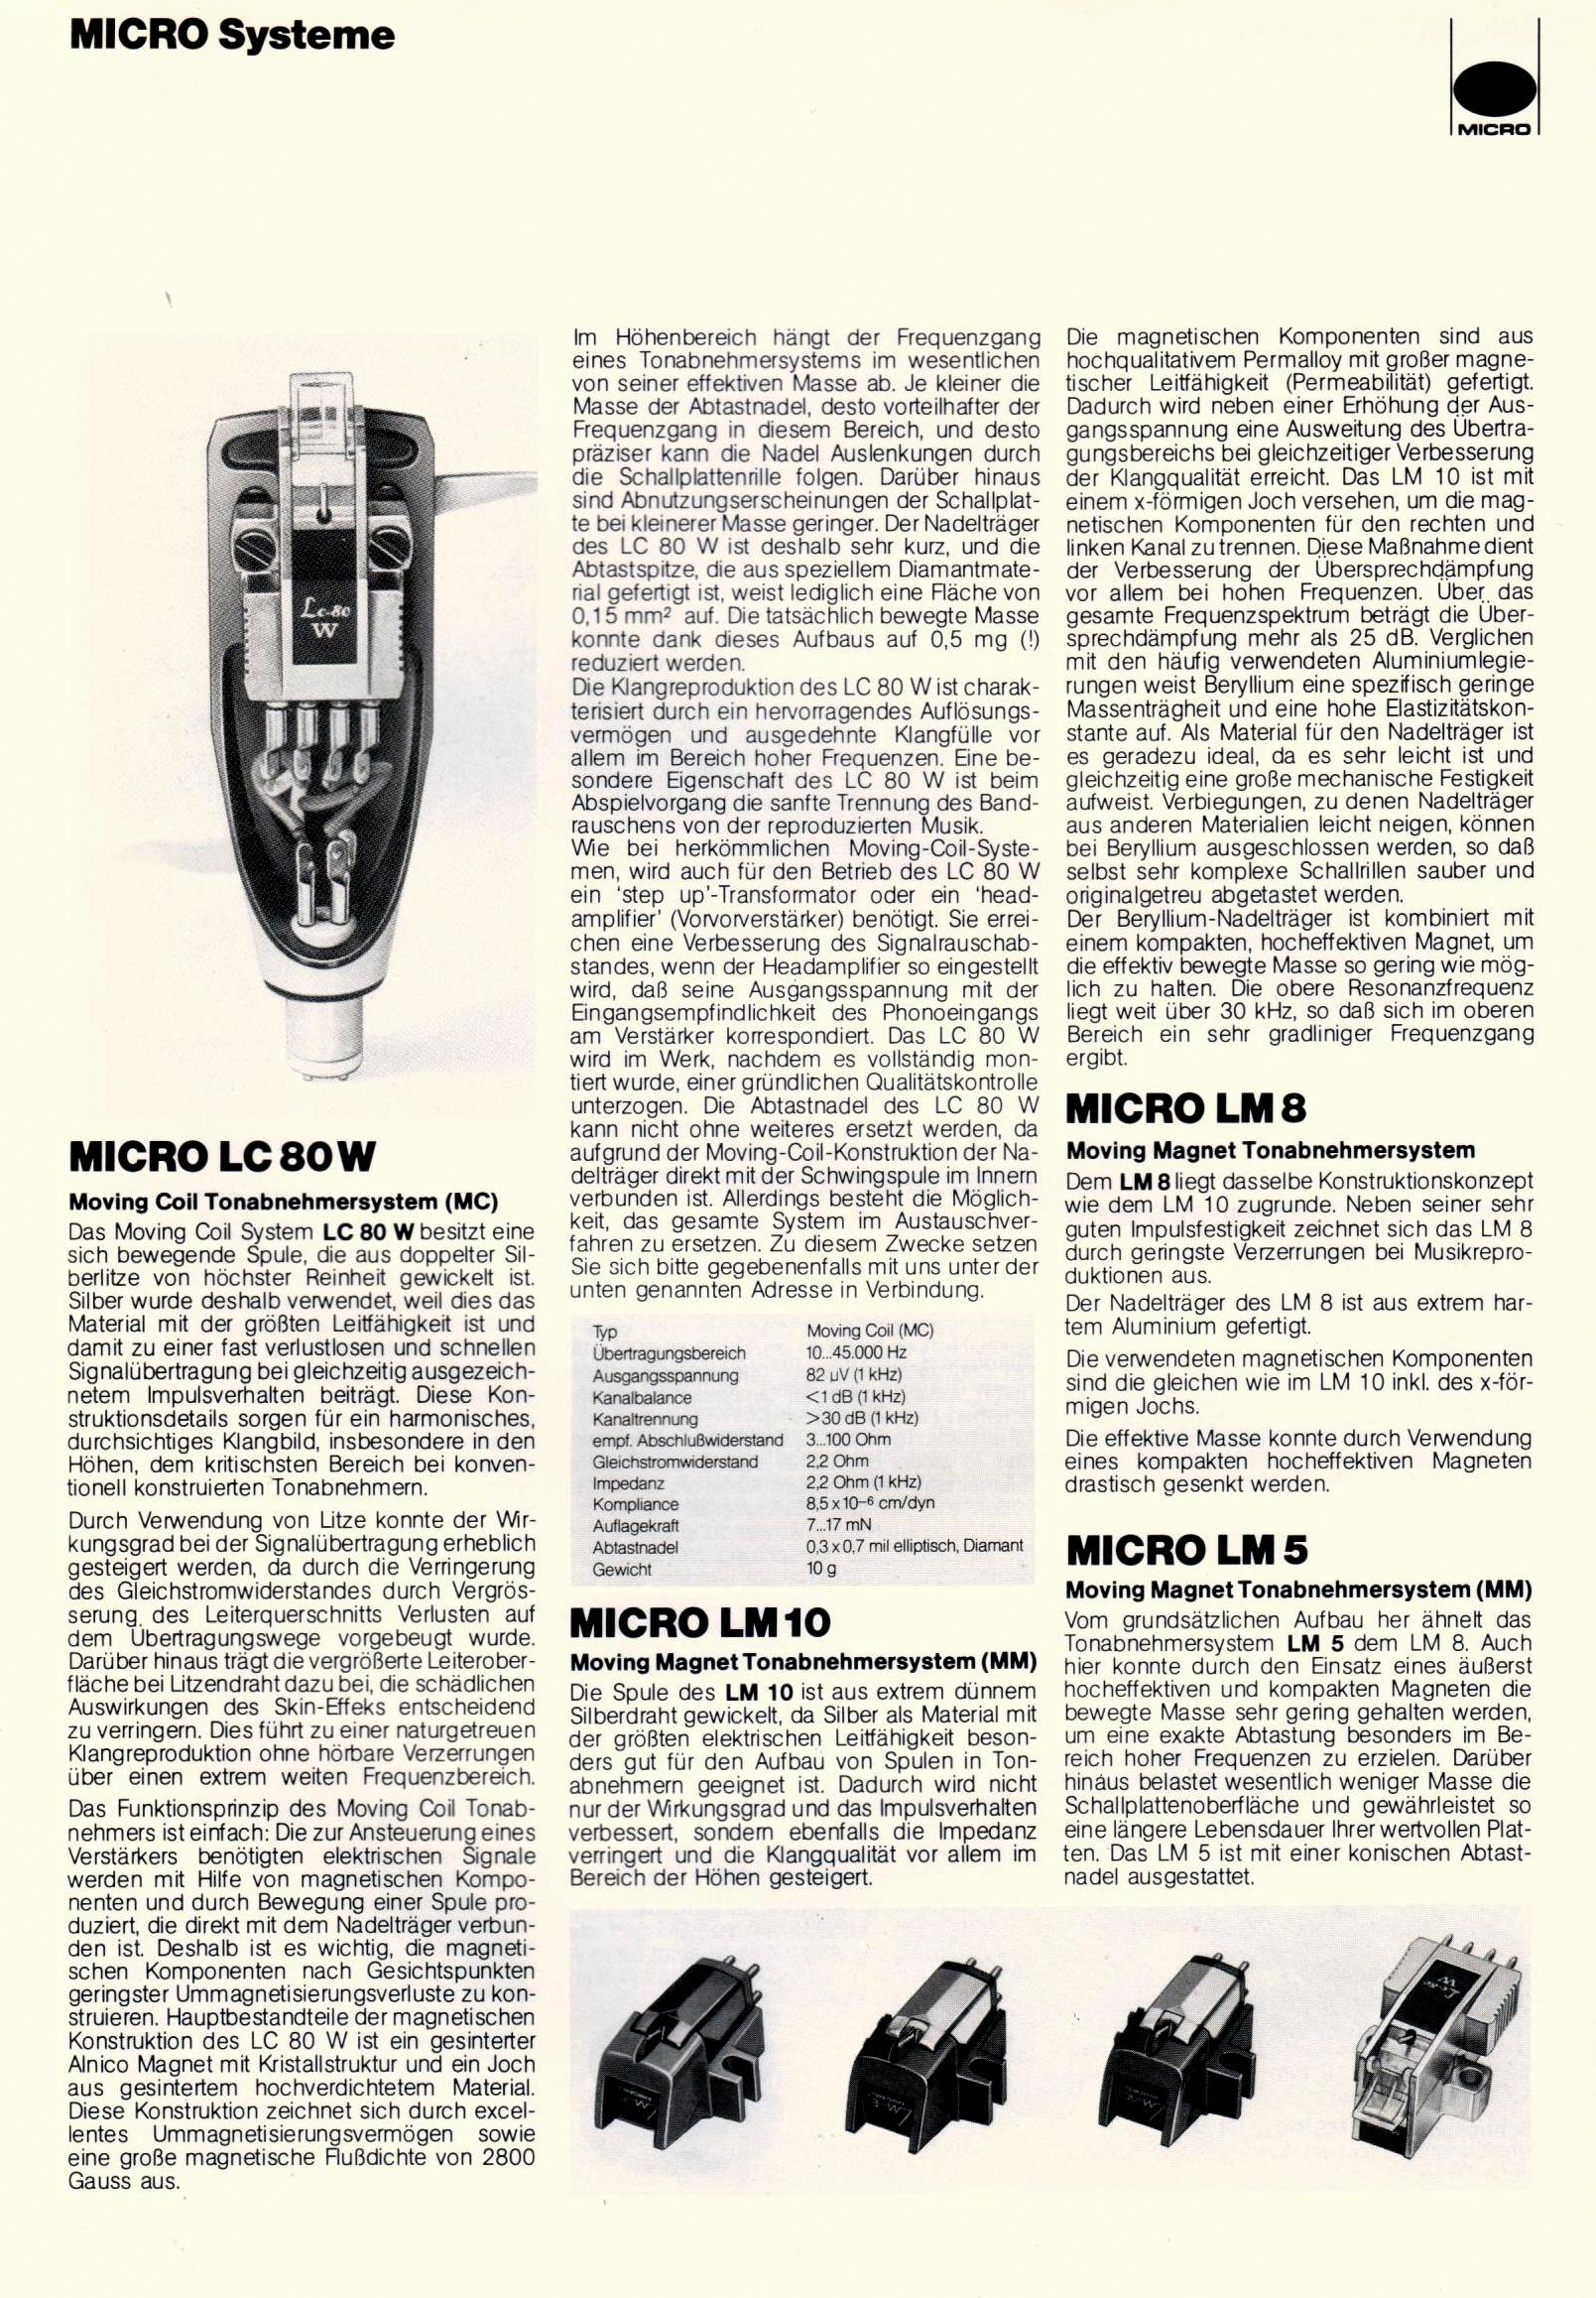 Micro Seiki LM-5-8-10-LC-80 W-Prospekt-1981.jpg